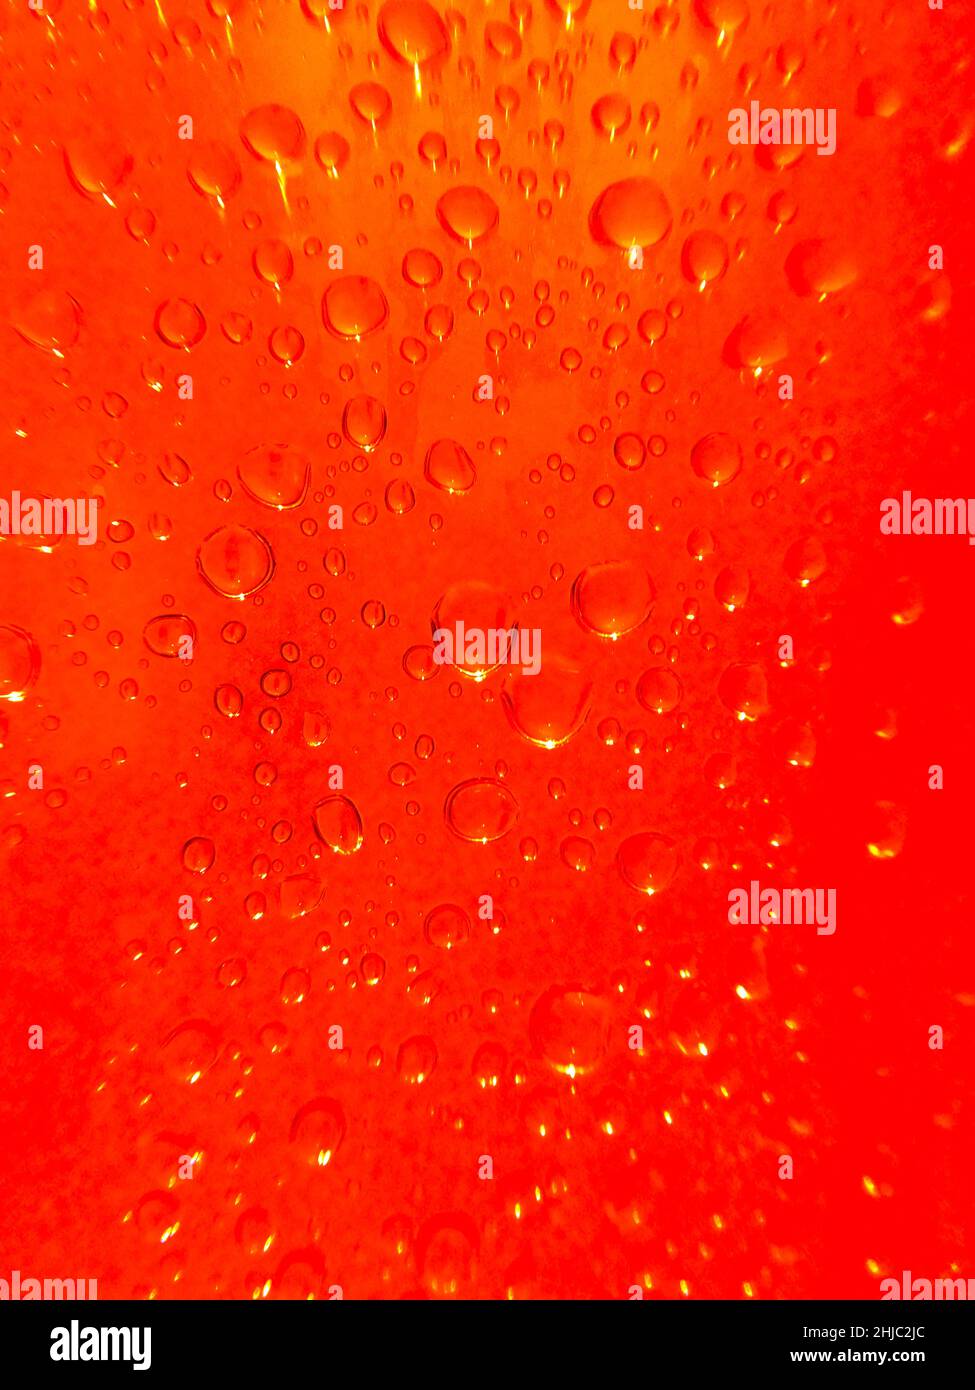 gros plan semi-abstrait de gouttelettes d'eau sur fond orange profond Banque D'Images